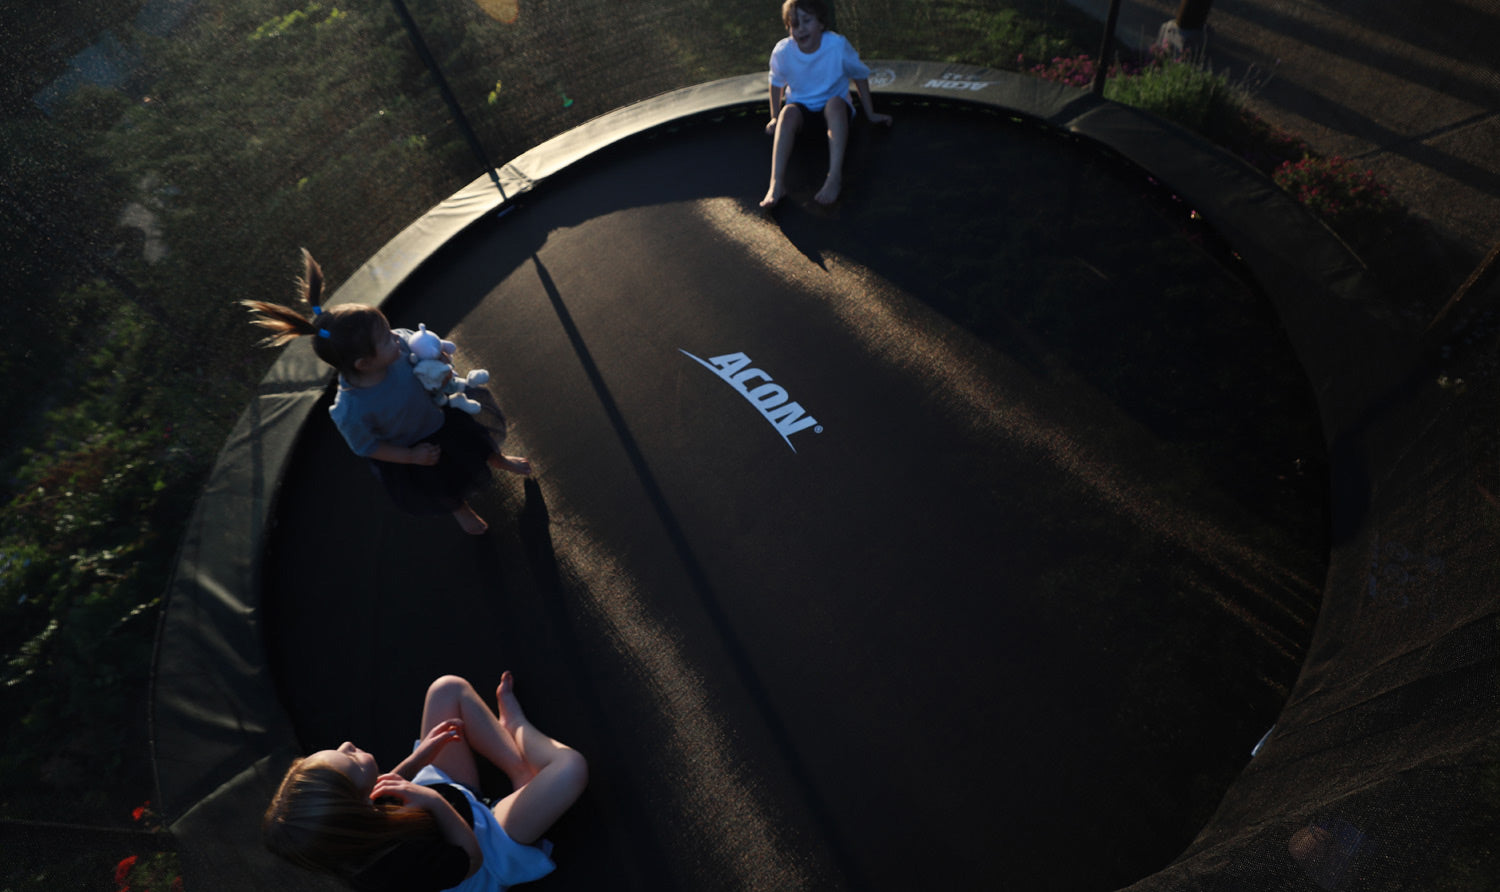 Kids on a trampoline